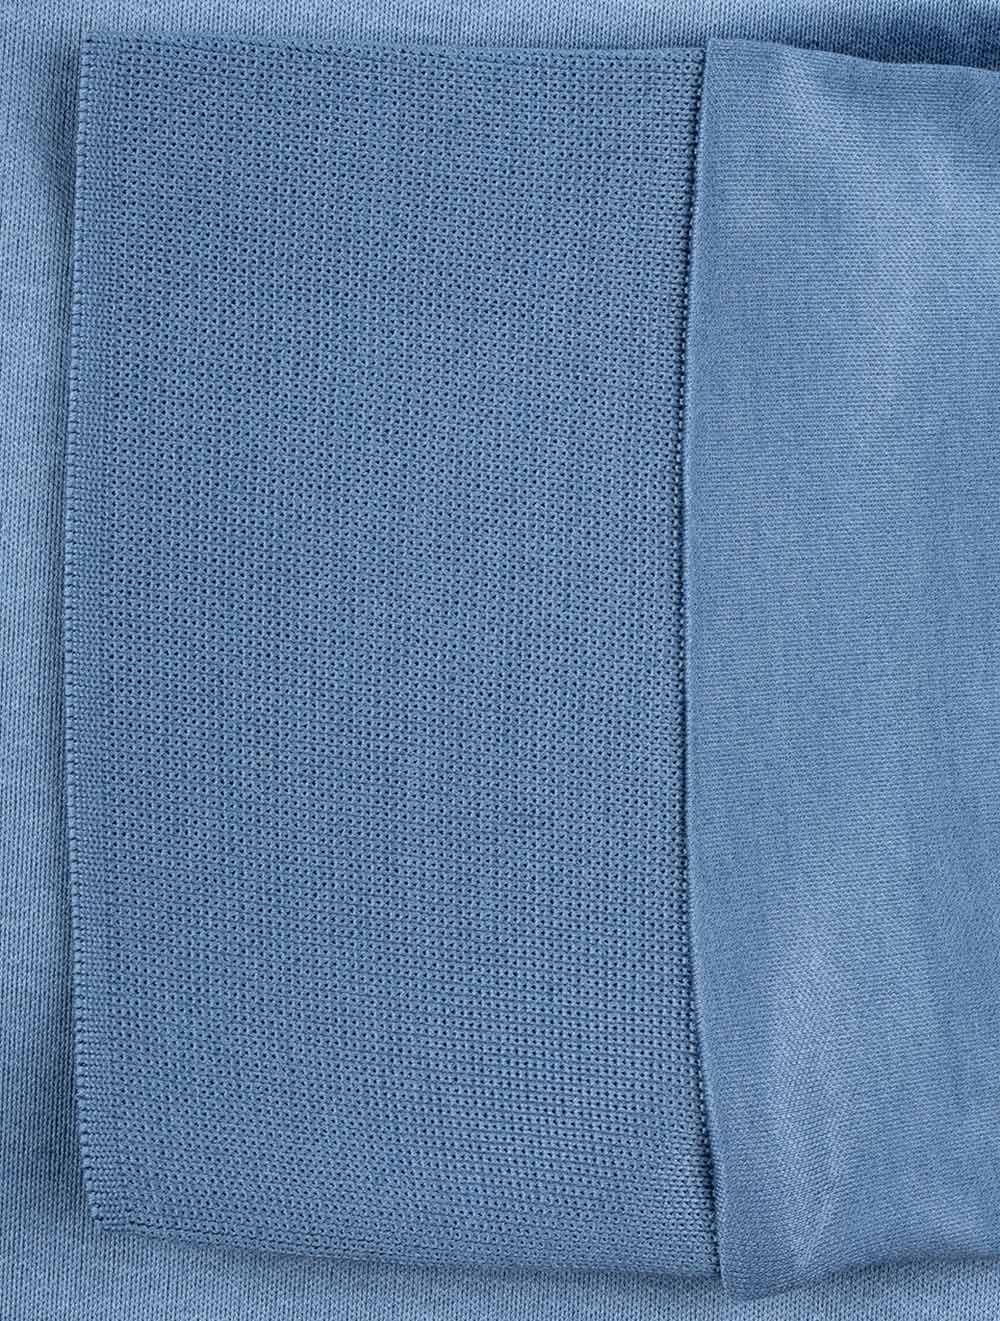 Long Sleeve 2 Button Light Blue